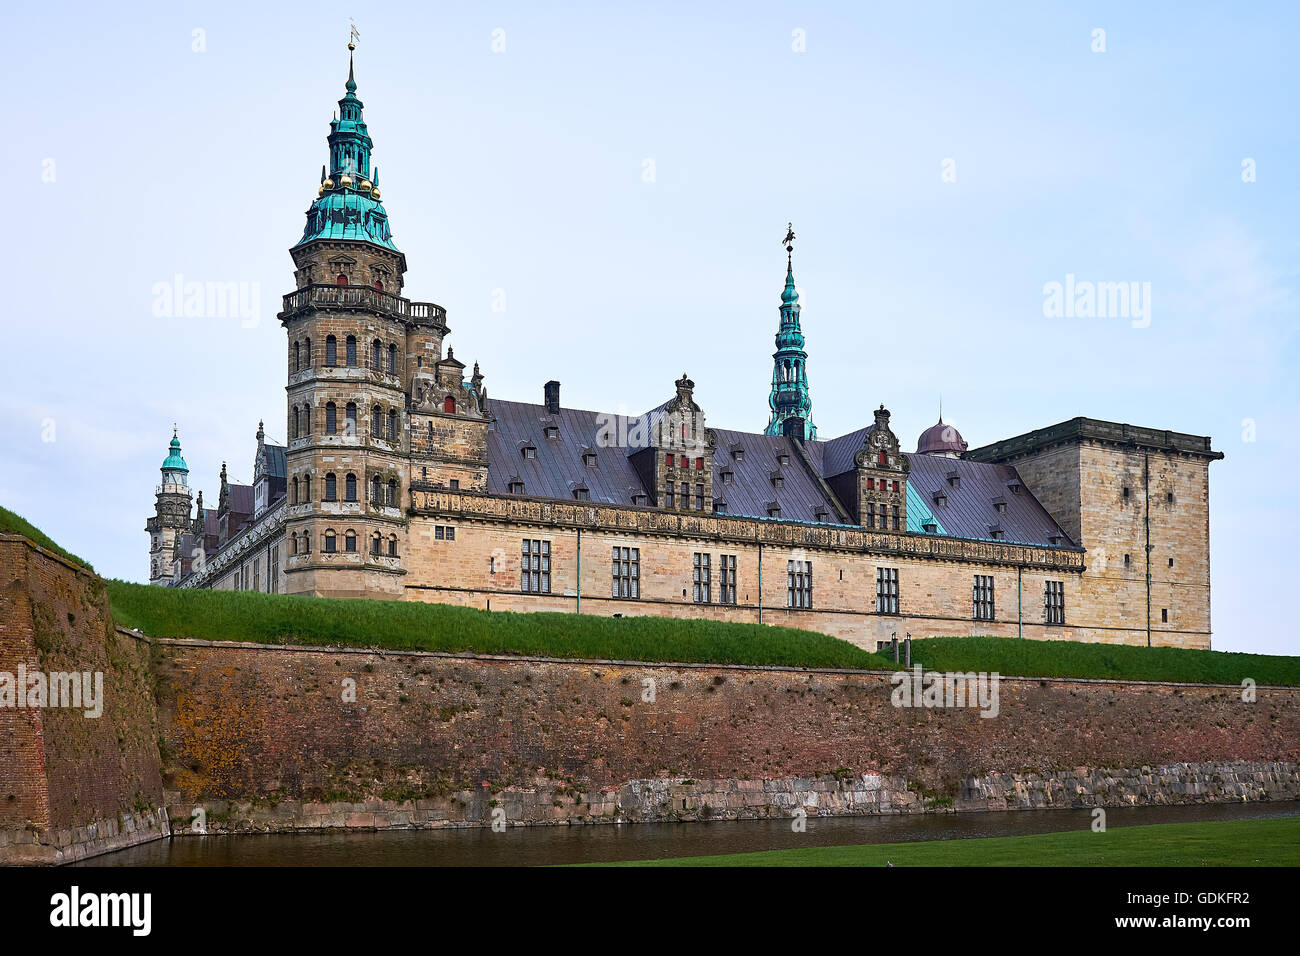 Elsinore Schloss der dänischen Renaissance mit grünen Cobber Turmspitzen und Schnörkel Details, erhebt sich über dem Graben Stockfoto